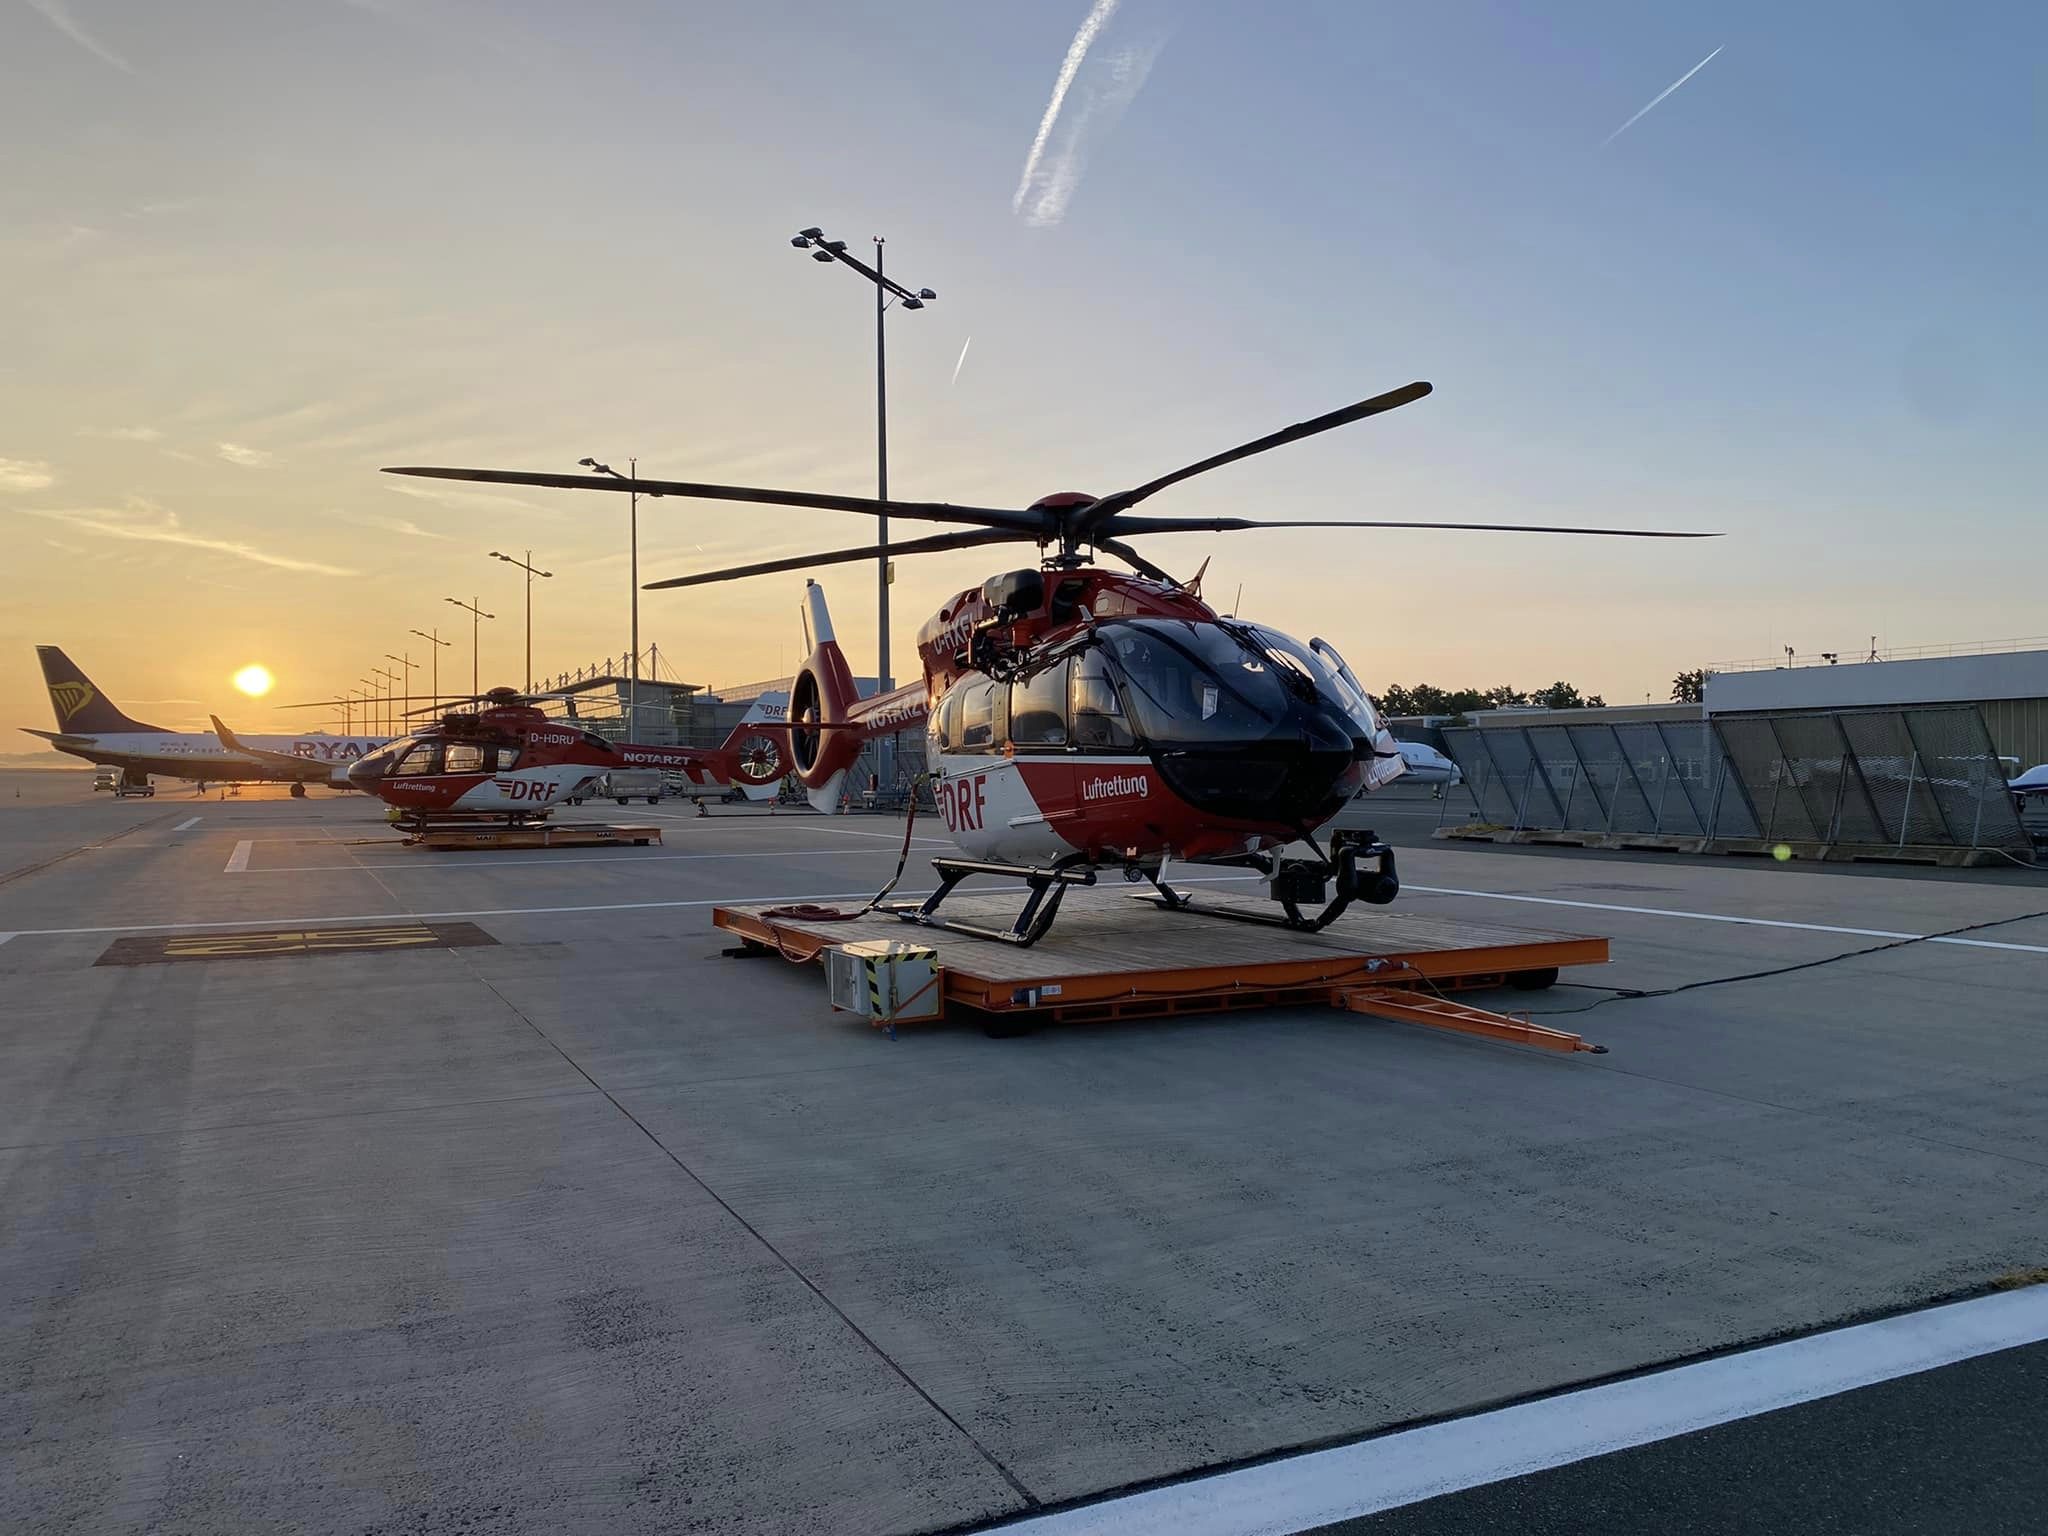 Ein Hubschrauber des Typs H145 mit Fünfblattrotor steht auf einer Plattform bei Sonnenuntergang am Flughafen Nürnberg